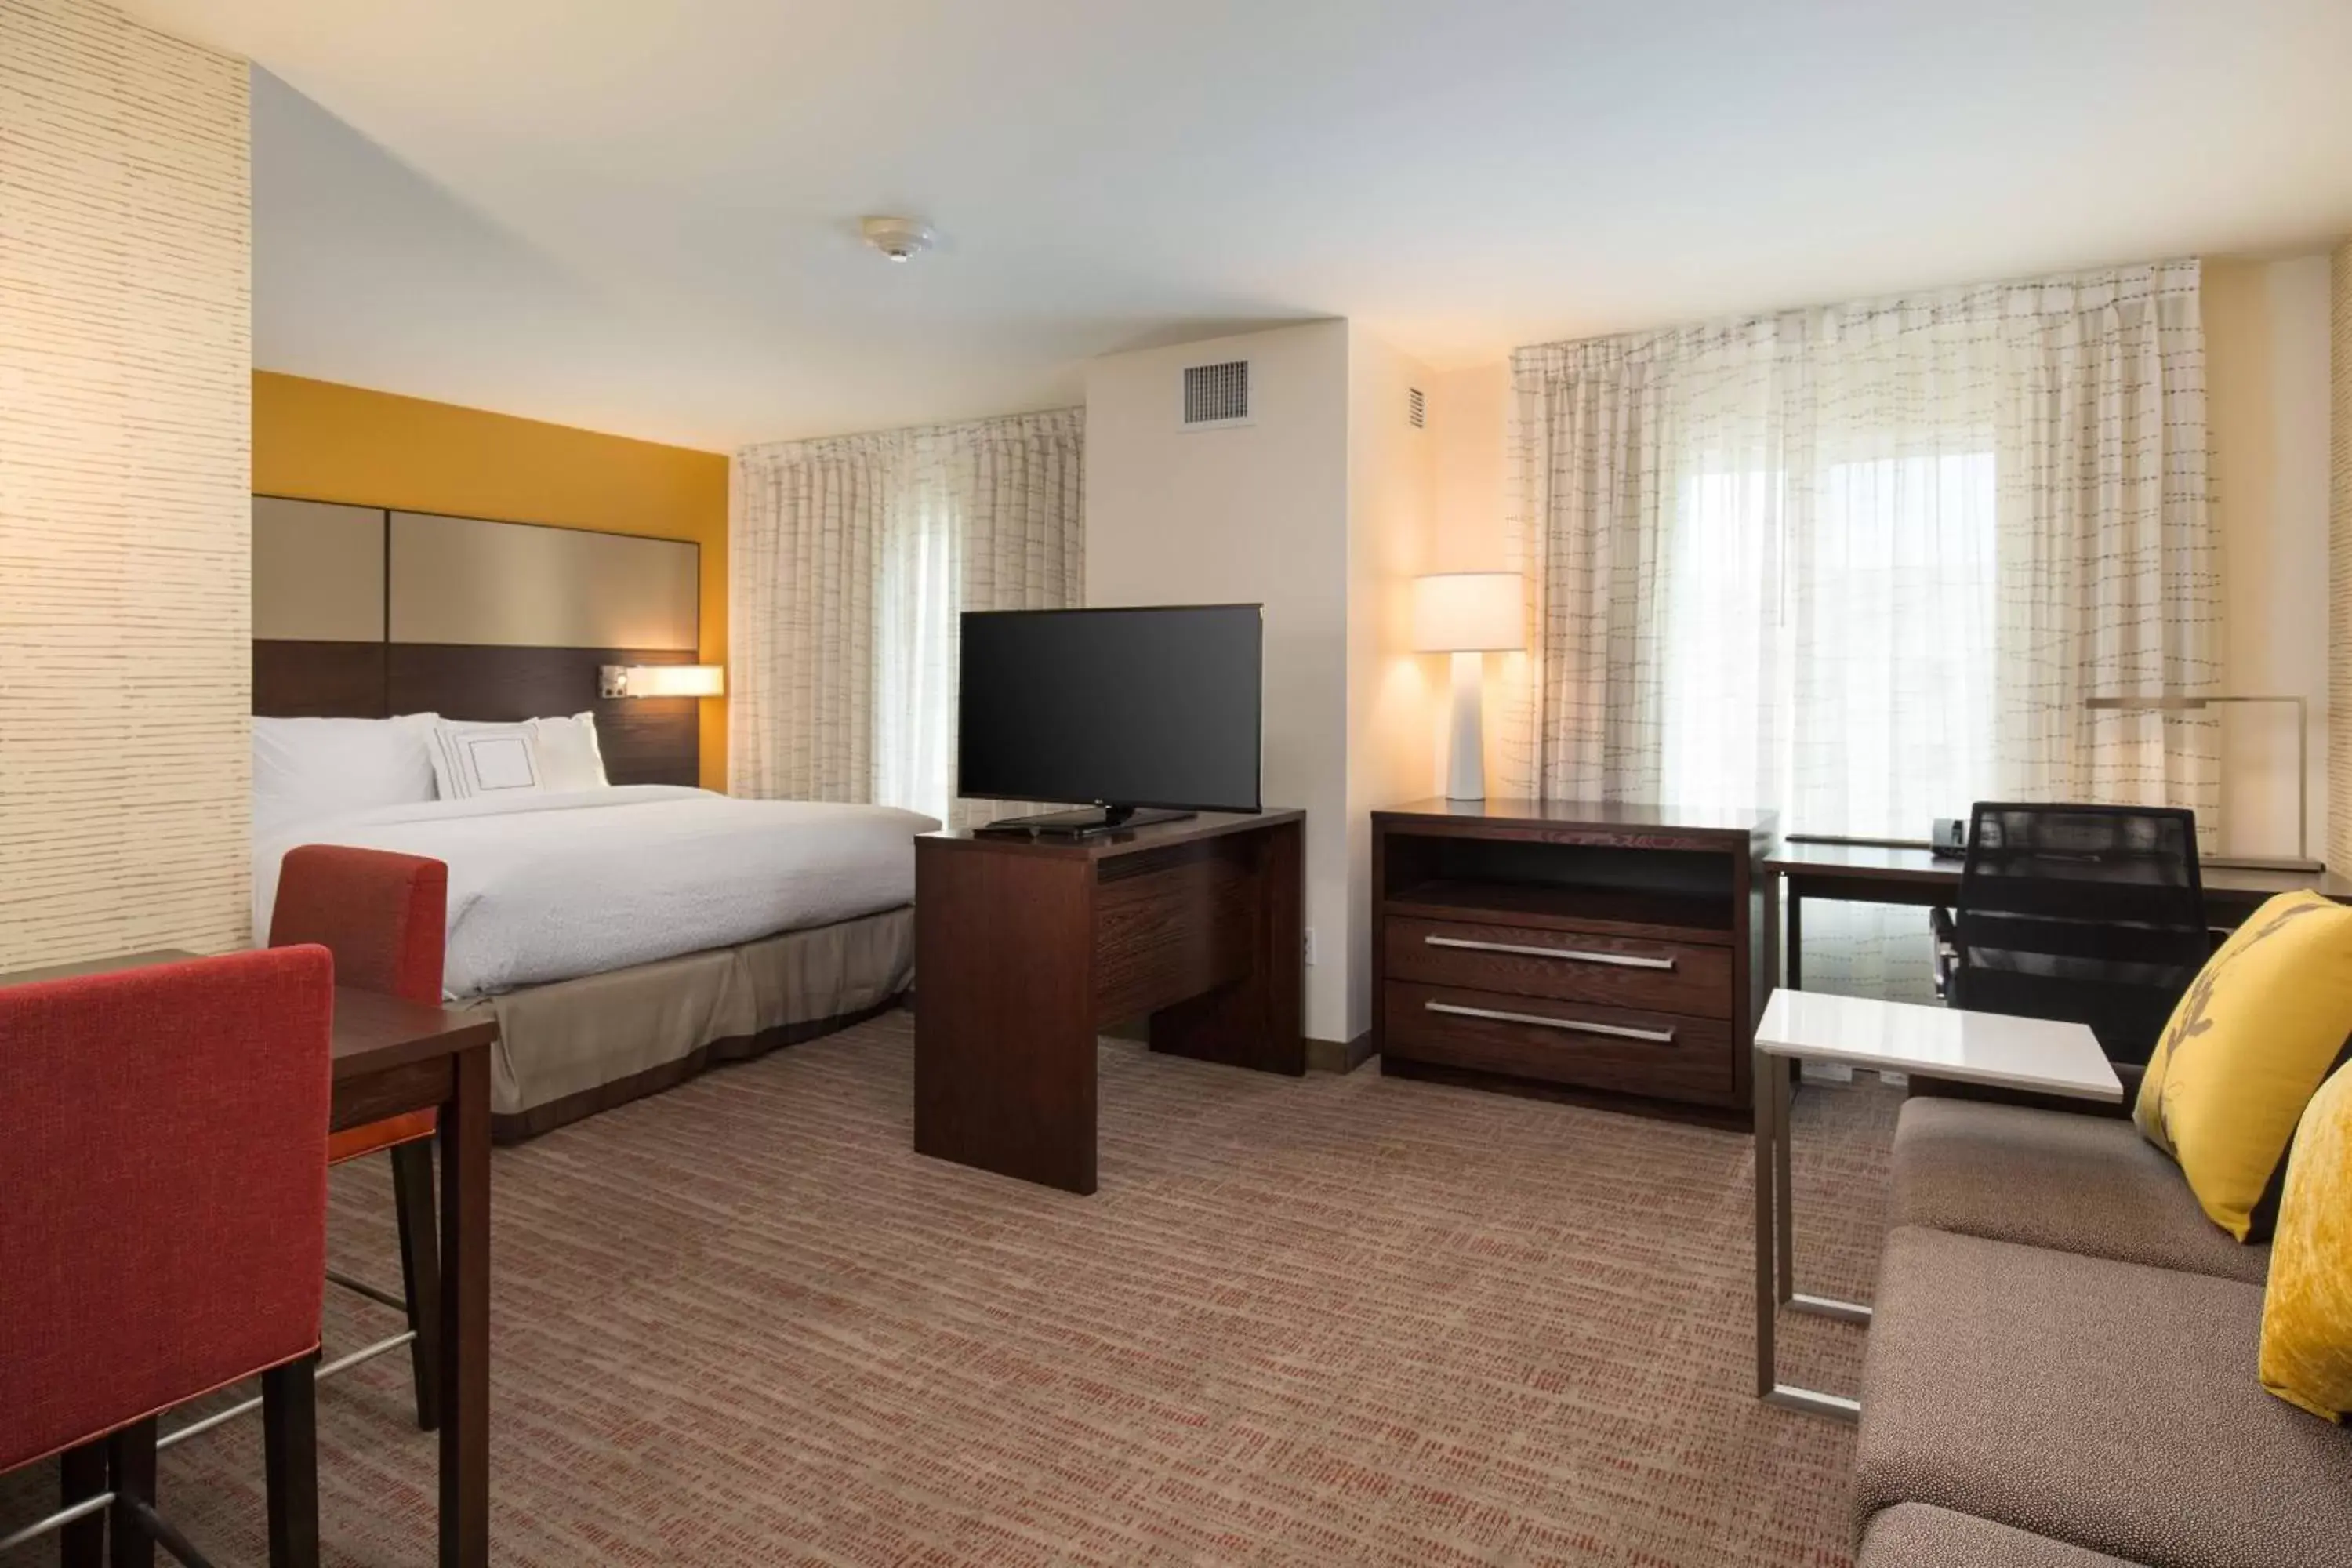 Bedroom, TV/Entertainment Center in Residence Inn by Marriott Las Vegas Airport